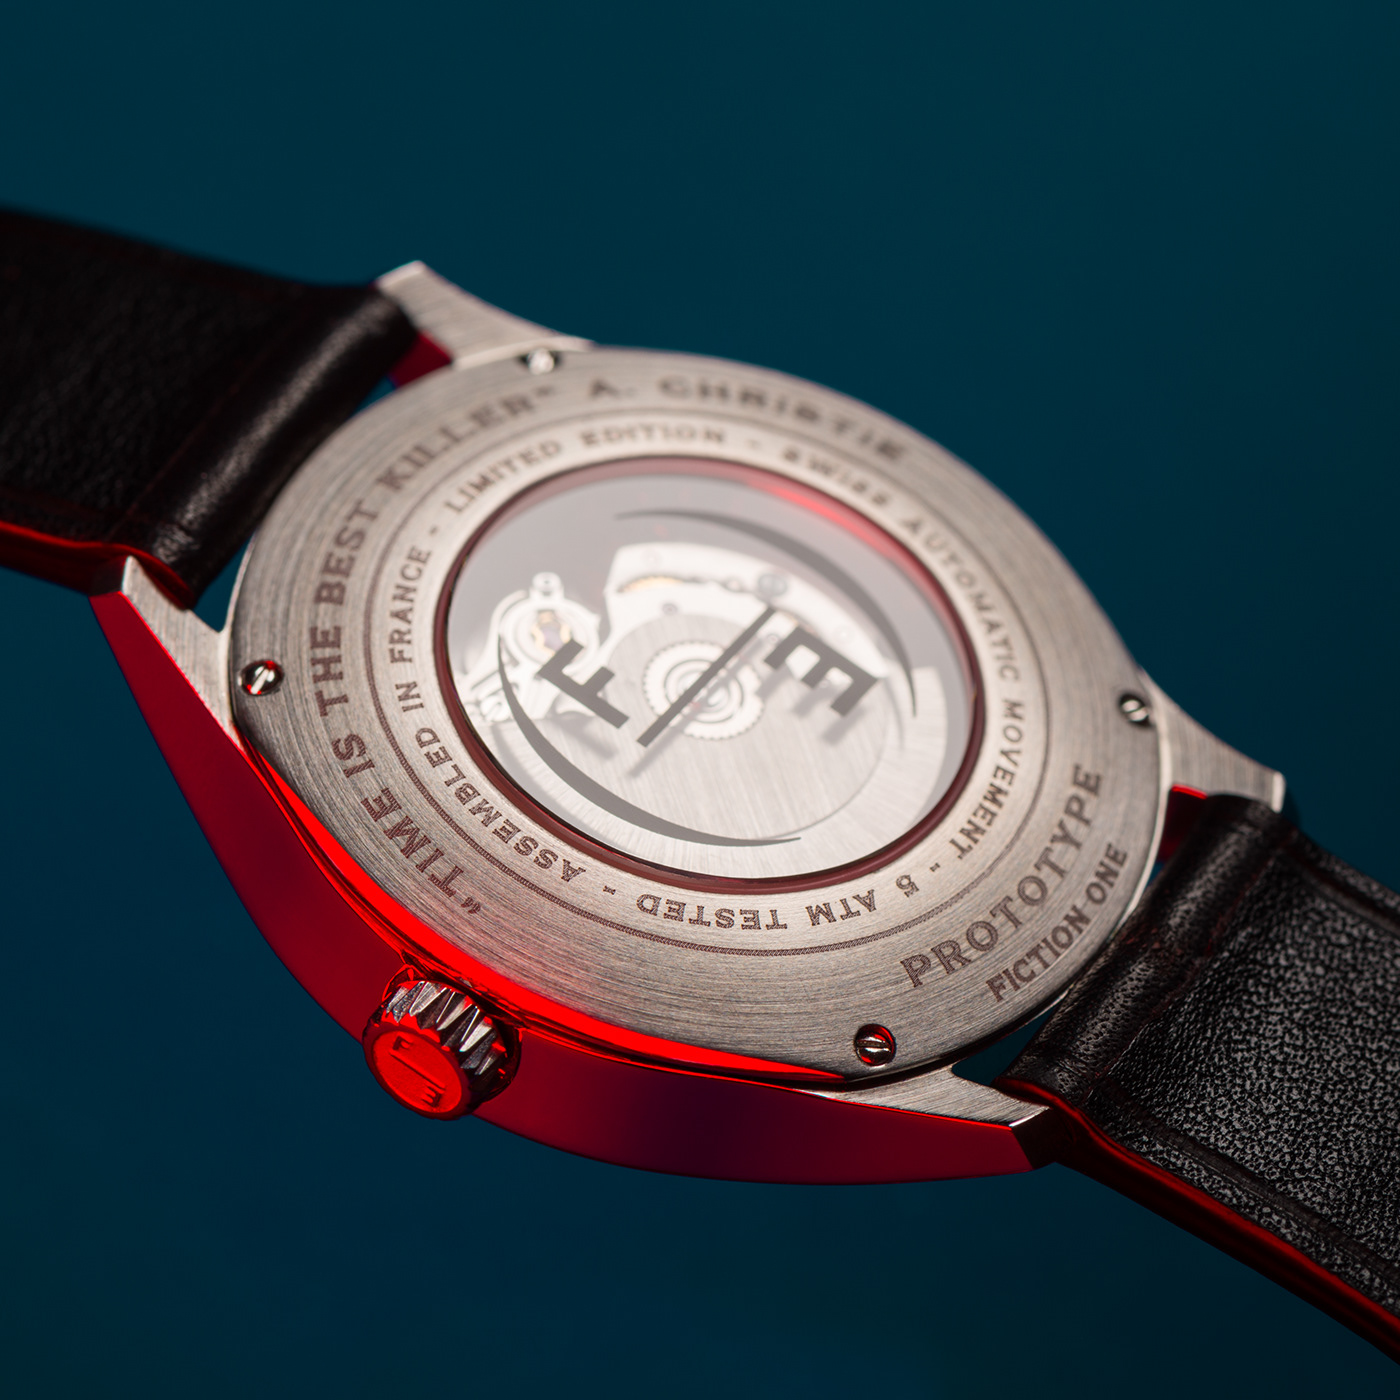 Floating hands fugue watches horlogerie horology Kickstarter montre watch Watch concept watch design Watches